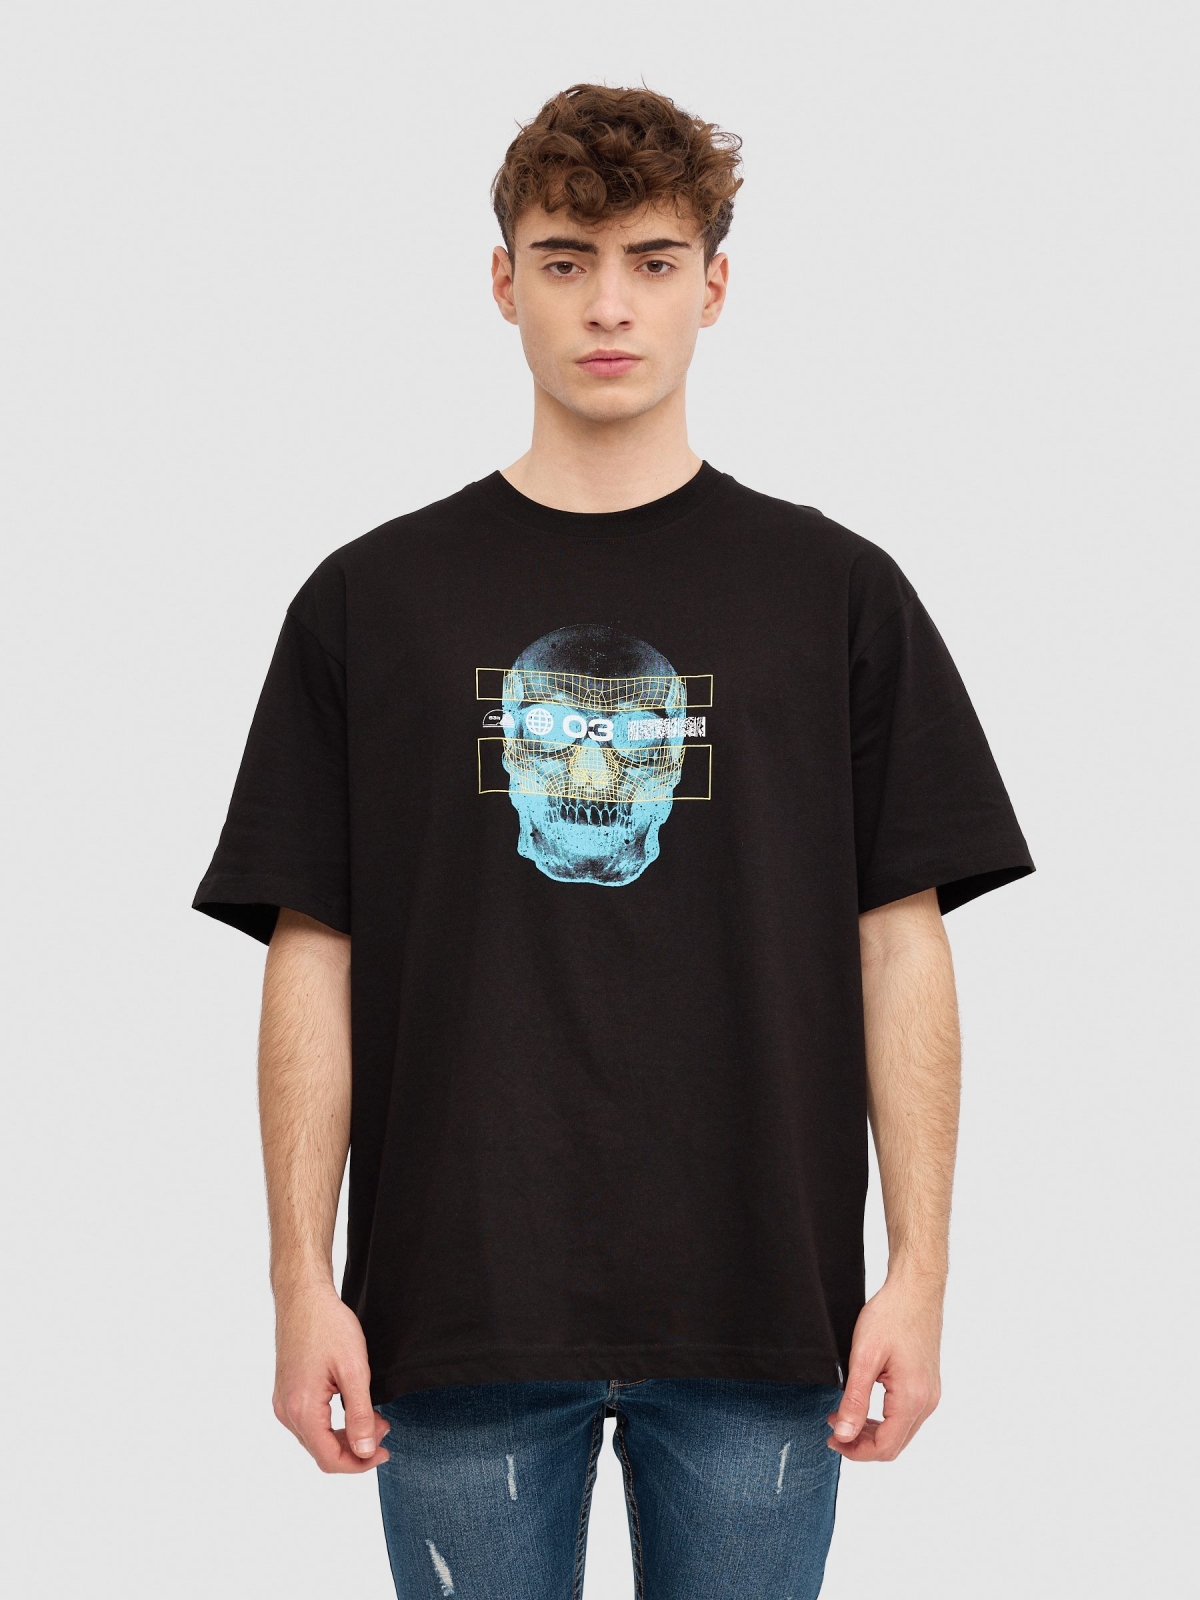 T-shirt tech com caveira preto vista meia frontal